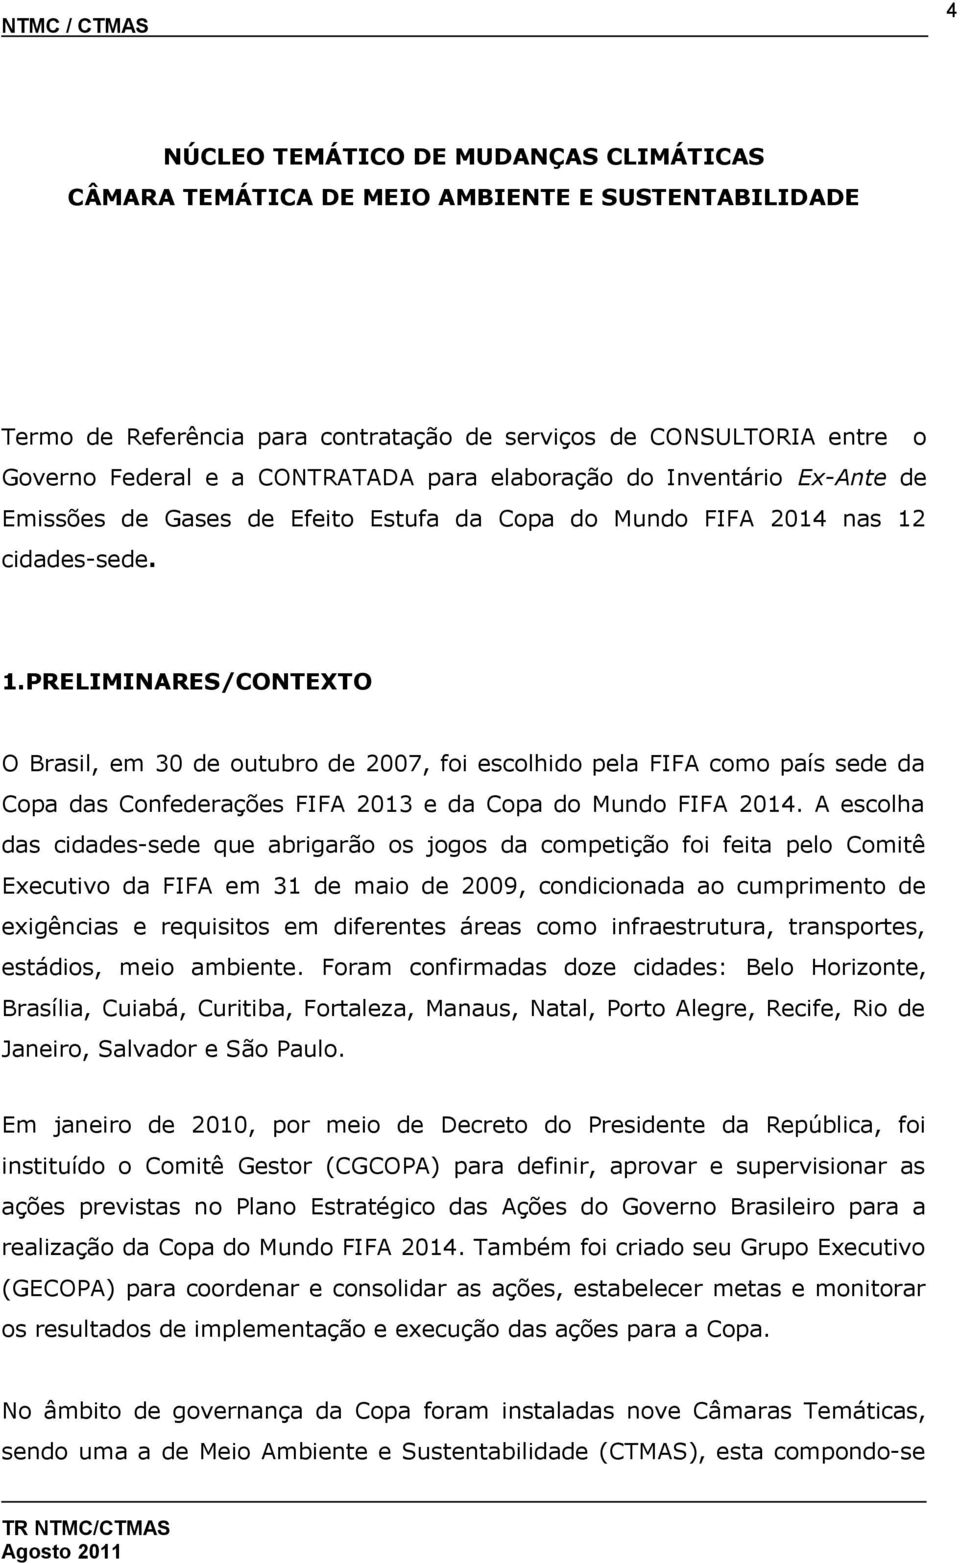 cidades-sede. 1.PRELIMINARES/CONTEXTO O Brasil, em 30 de outubro de 2007, foi escolhido pela FIFA como país sede da Copa das Confederações FIFA 2013 e da Copa do Mundo FIFA 2014.